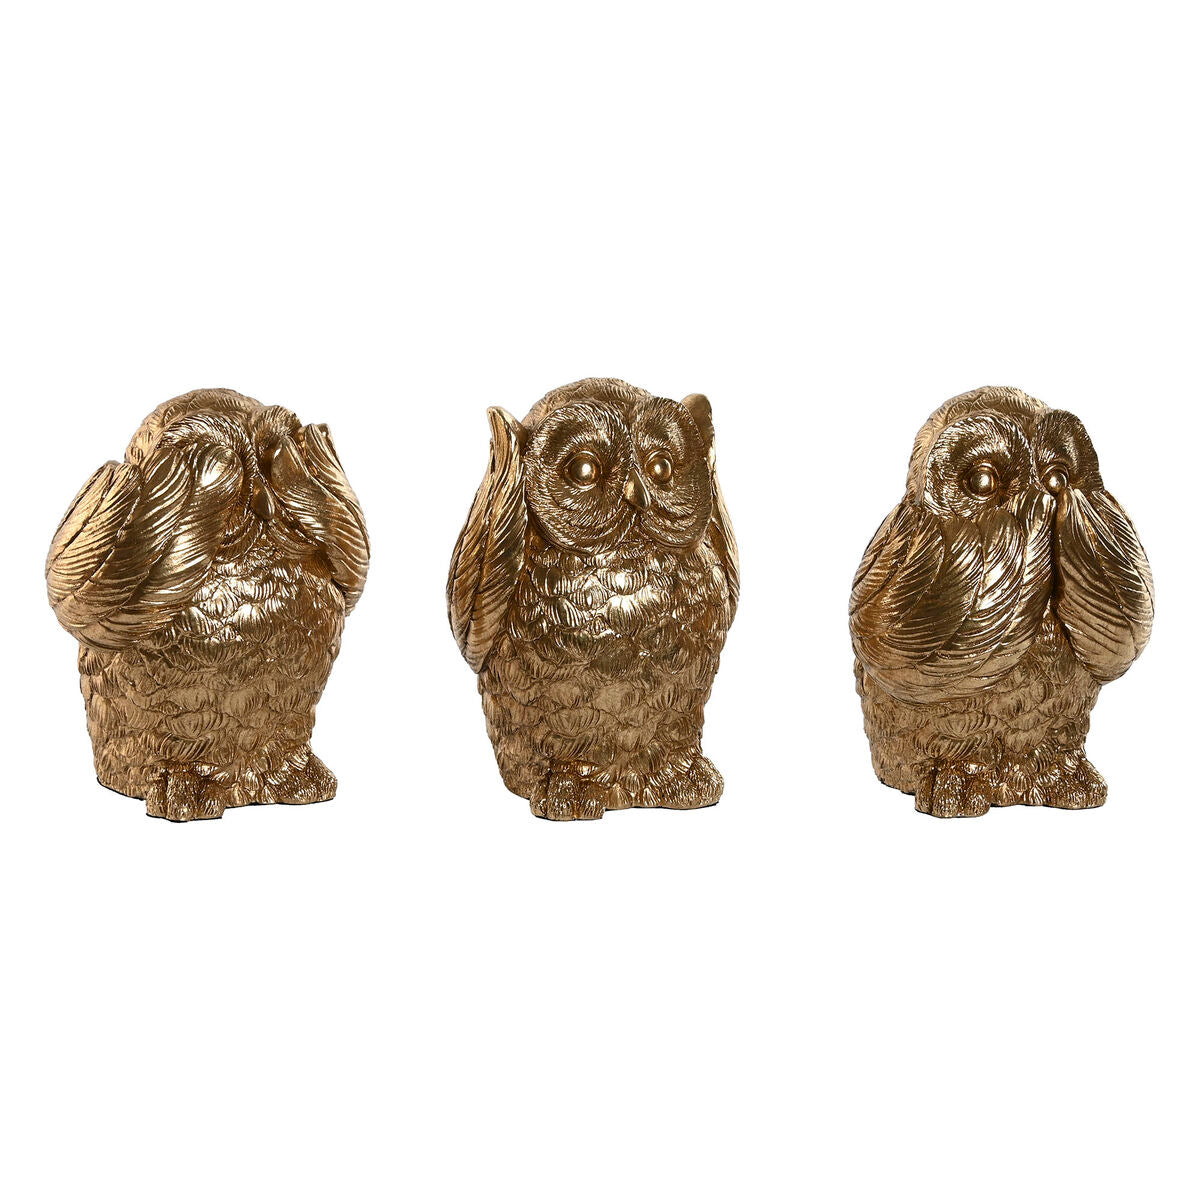 Decorative Figure Home ESPRIT Golden Owl 11 x 11 x 15 cm (3 Units)